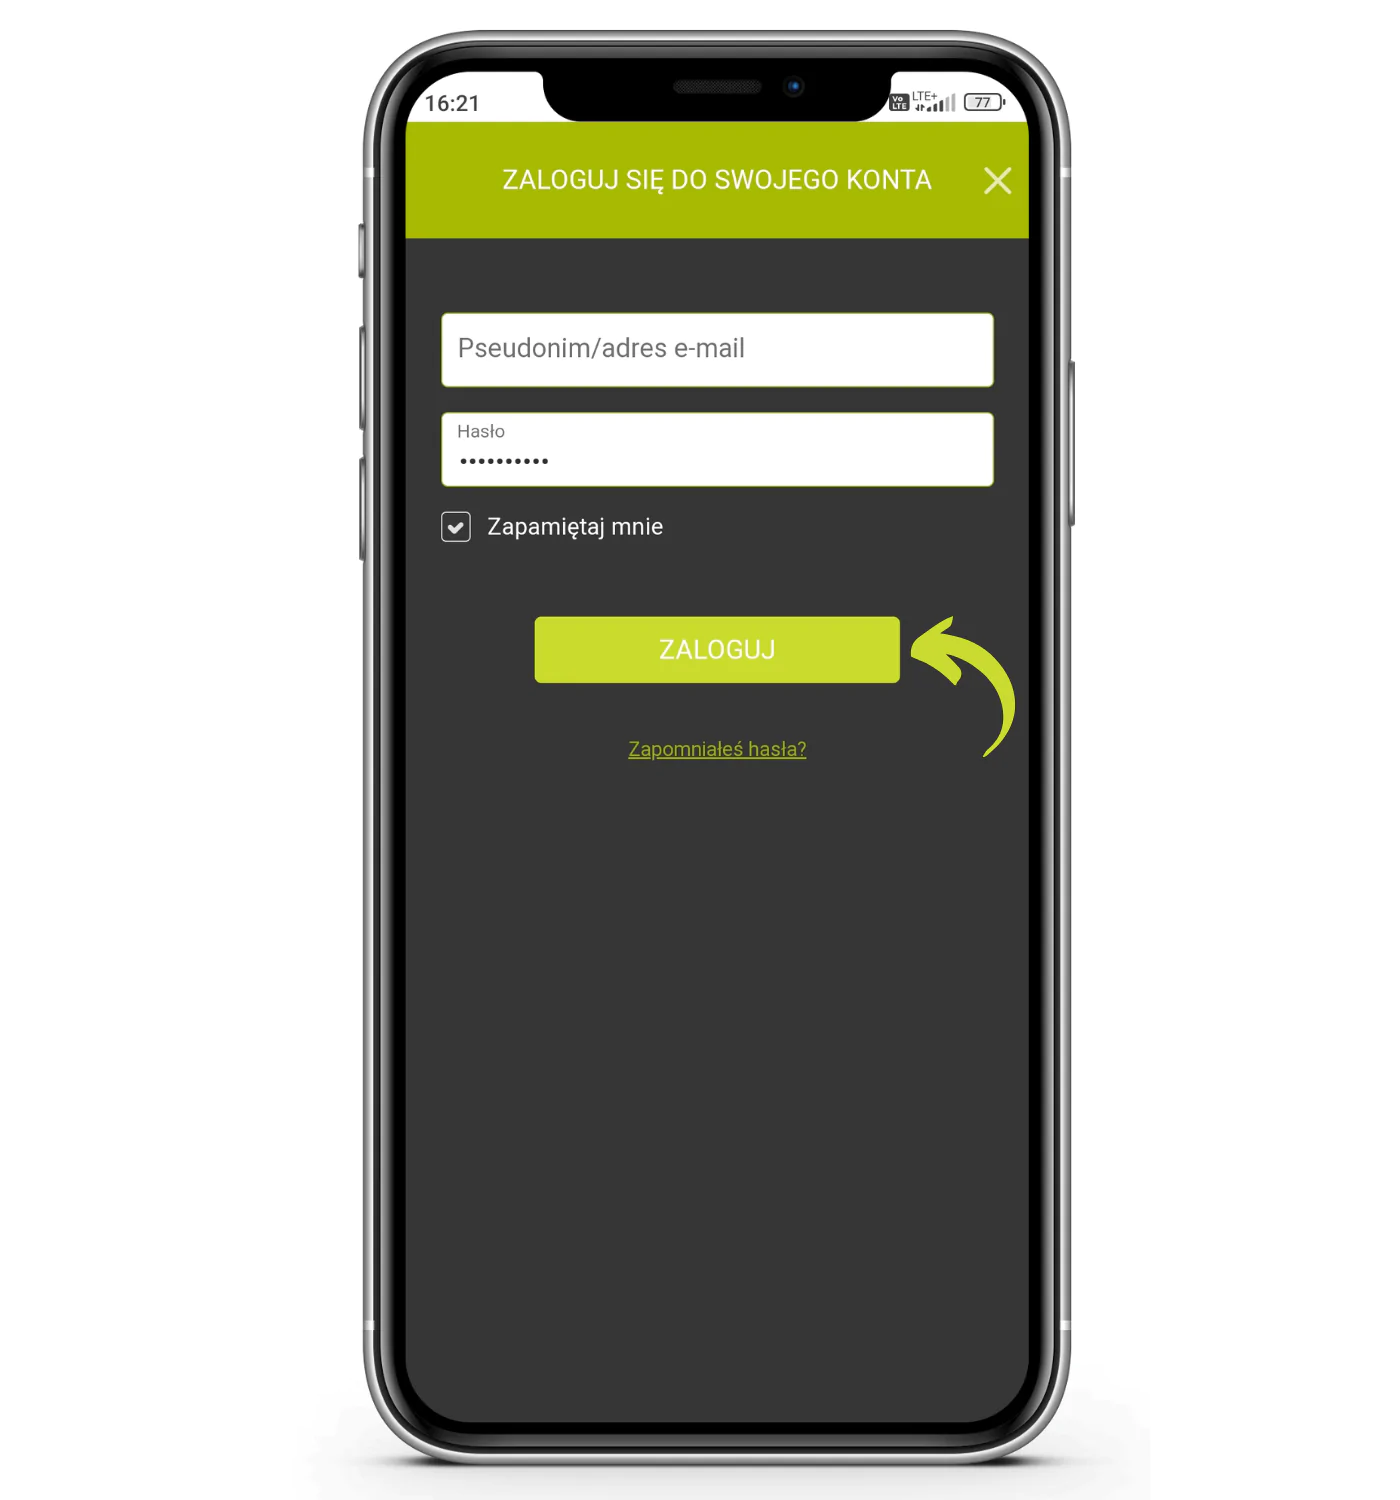 Jak dokonać wypłaty za pomocą aplikacji mobilnej GoPlusBet krok 1 - włącz aplikację mobilną bukmachera, a następnie zaloguj się na swoje konto